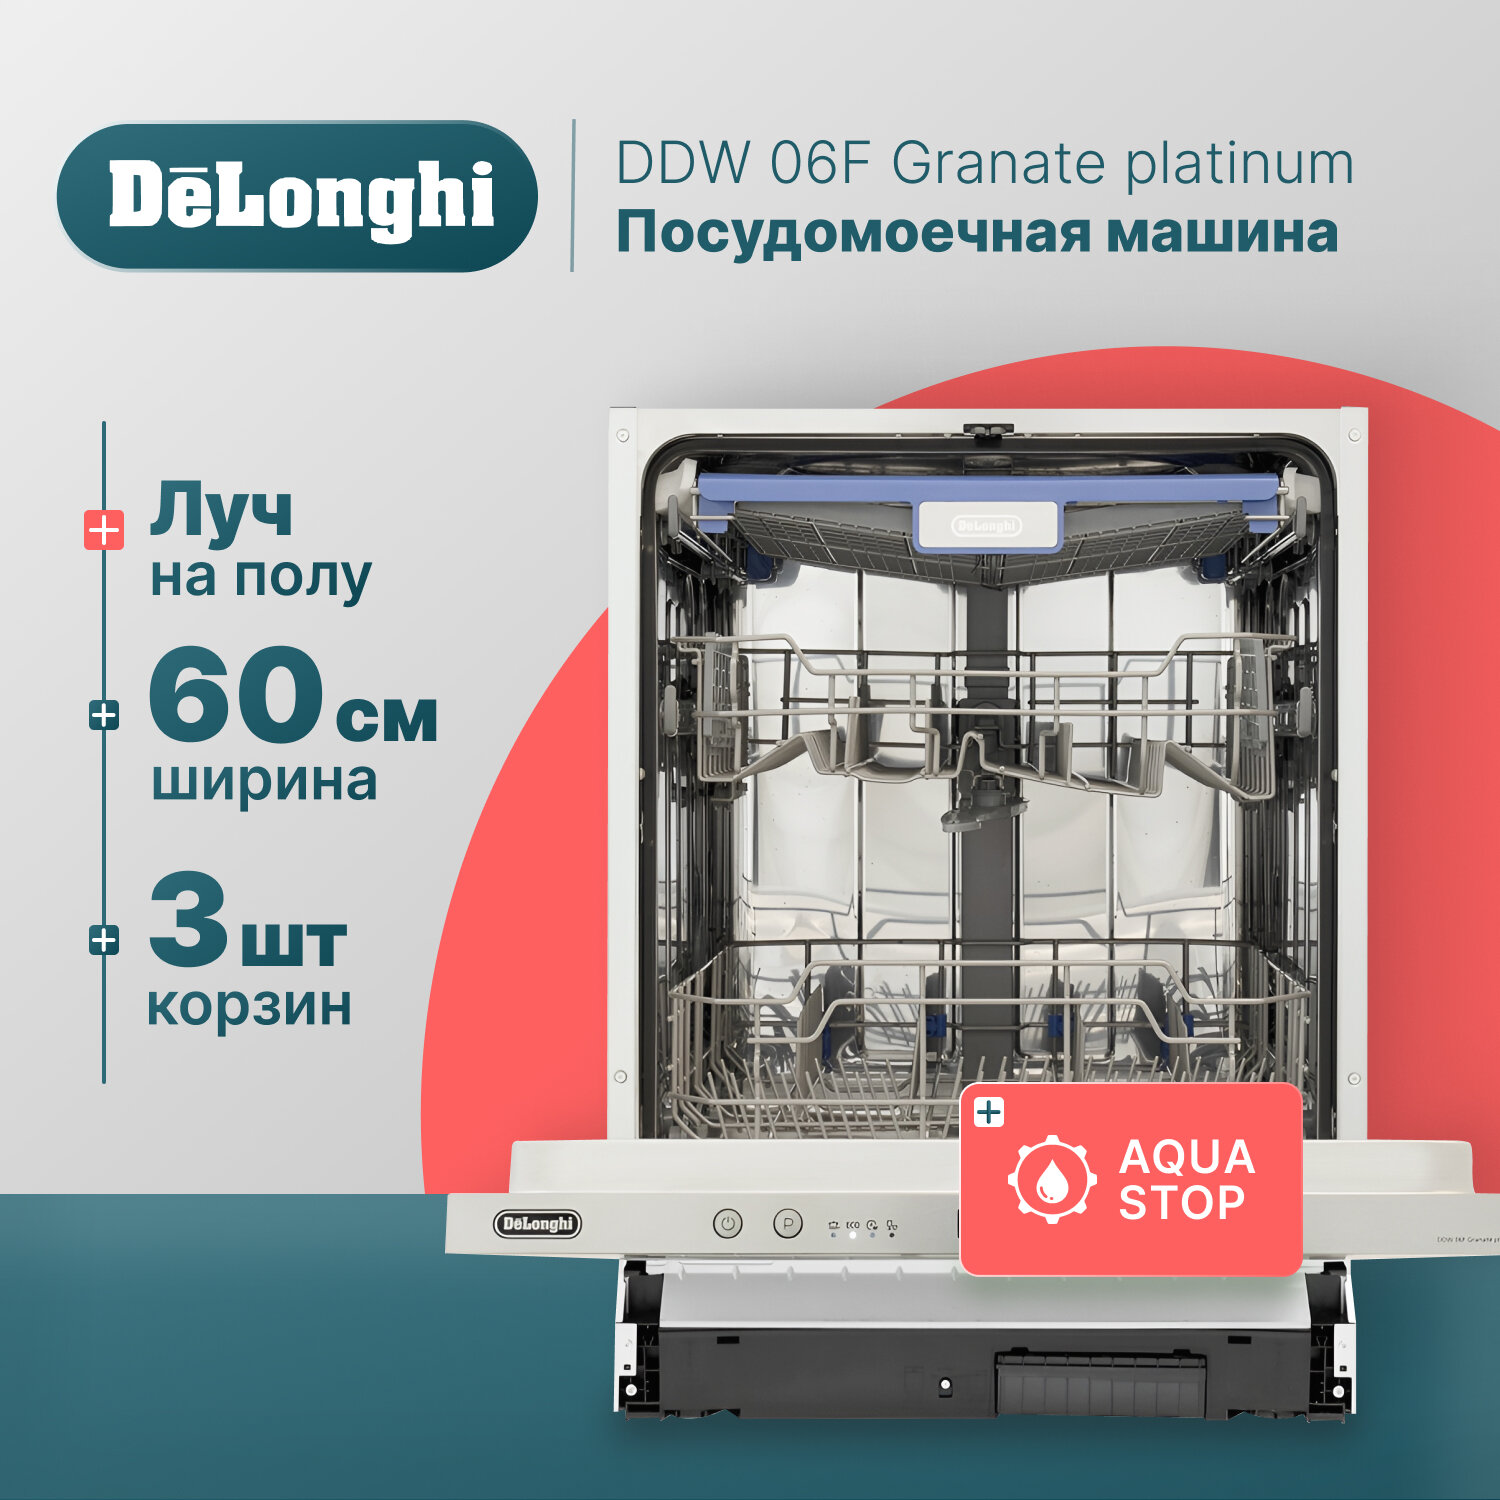 Встраиваемая посудомоечная машина DeLonghi DDW 06F Granate platinum, 60 см, 14 комплектов, Aqua Stop, 3 корзины, внутренняя LED-подсветка